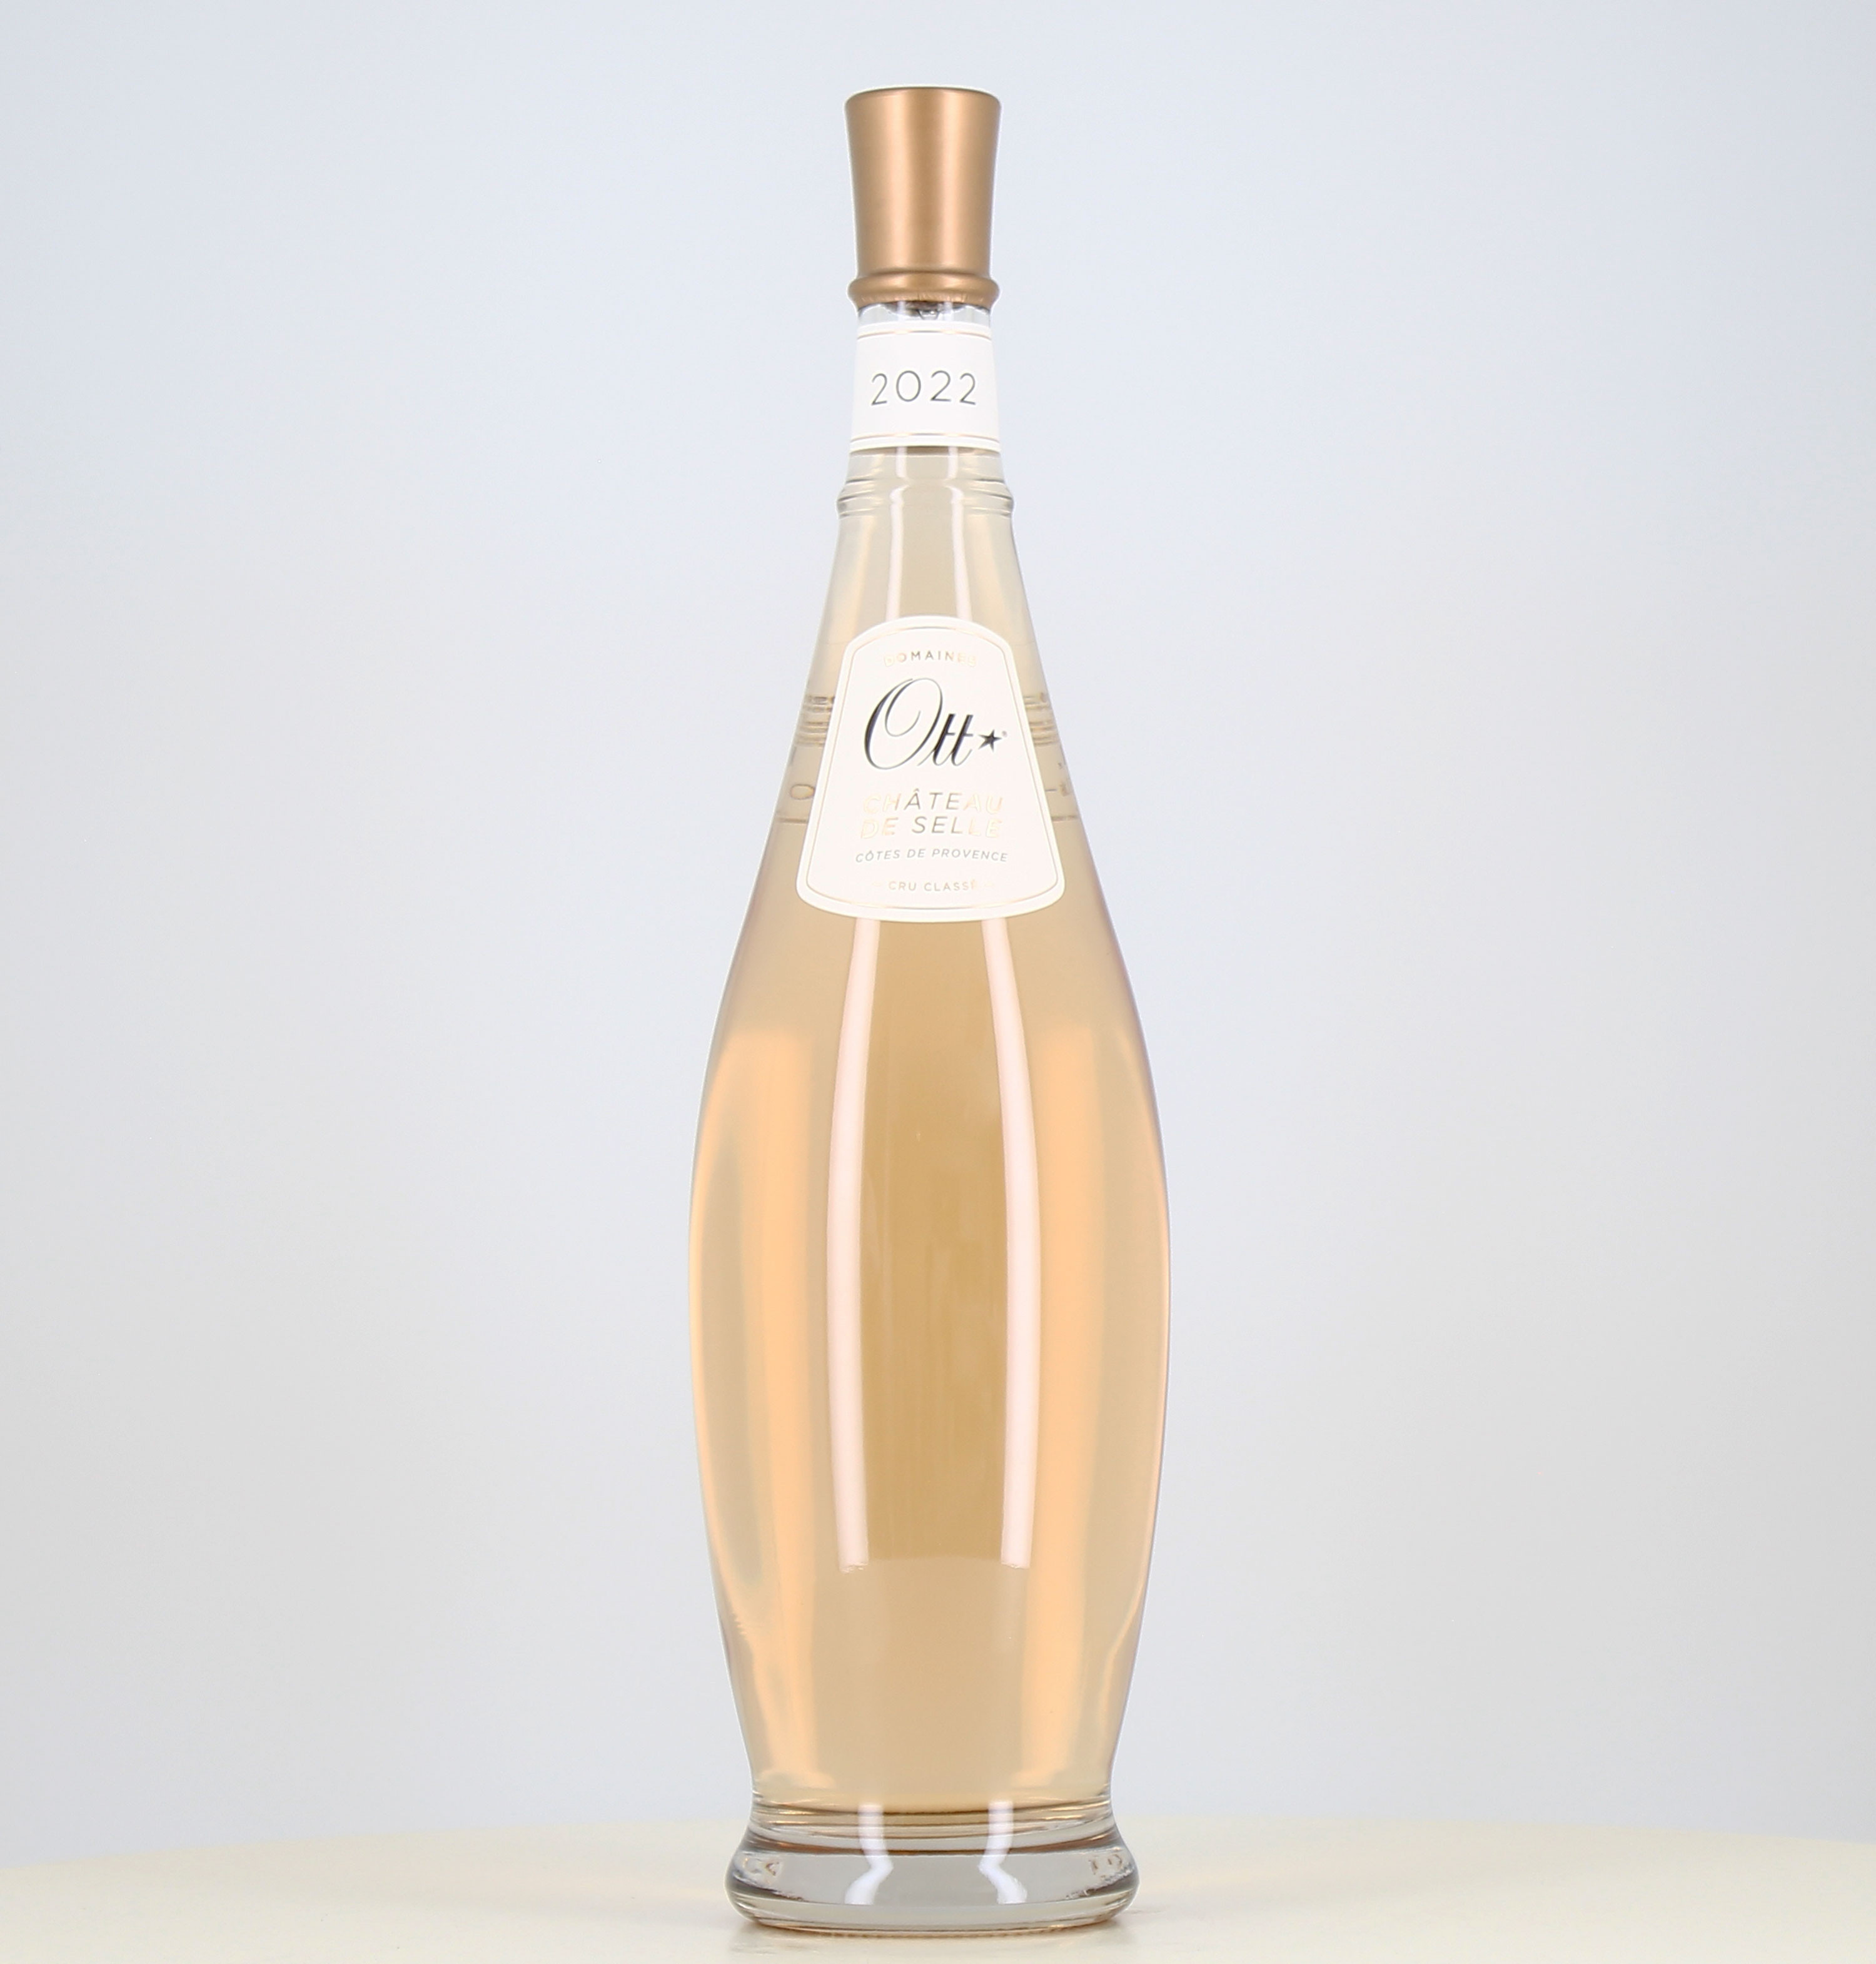 Jéroboam vino rosado Ott côtes de Provence Château de Selle 2022 